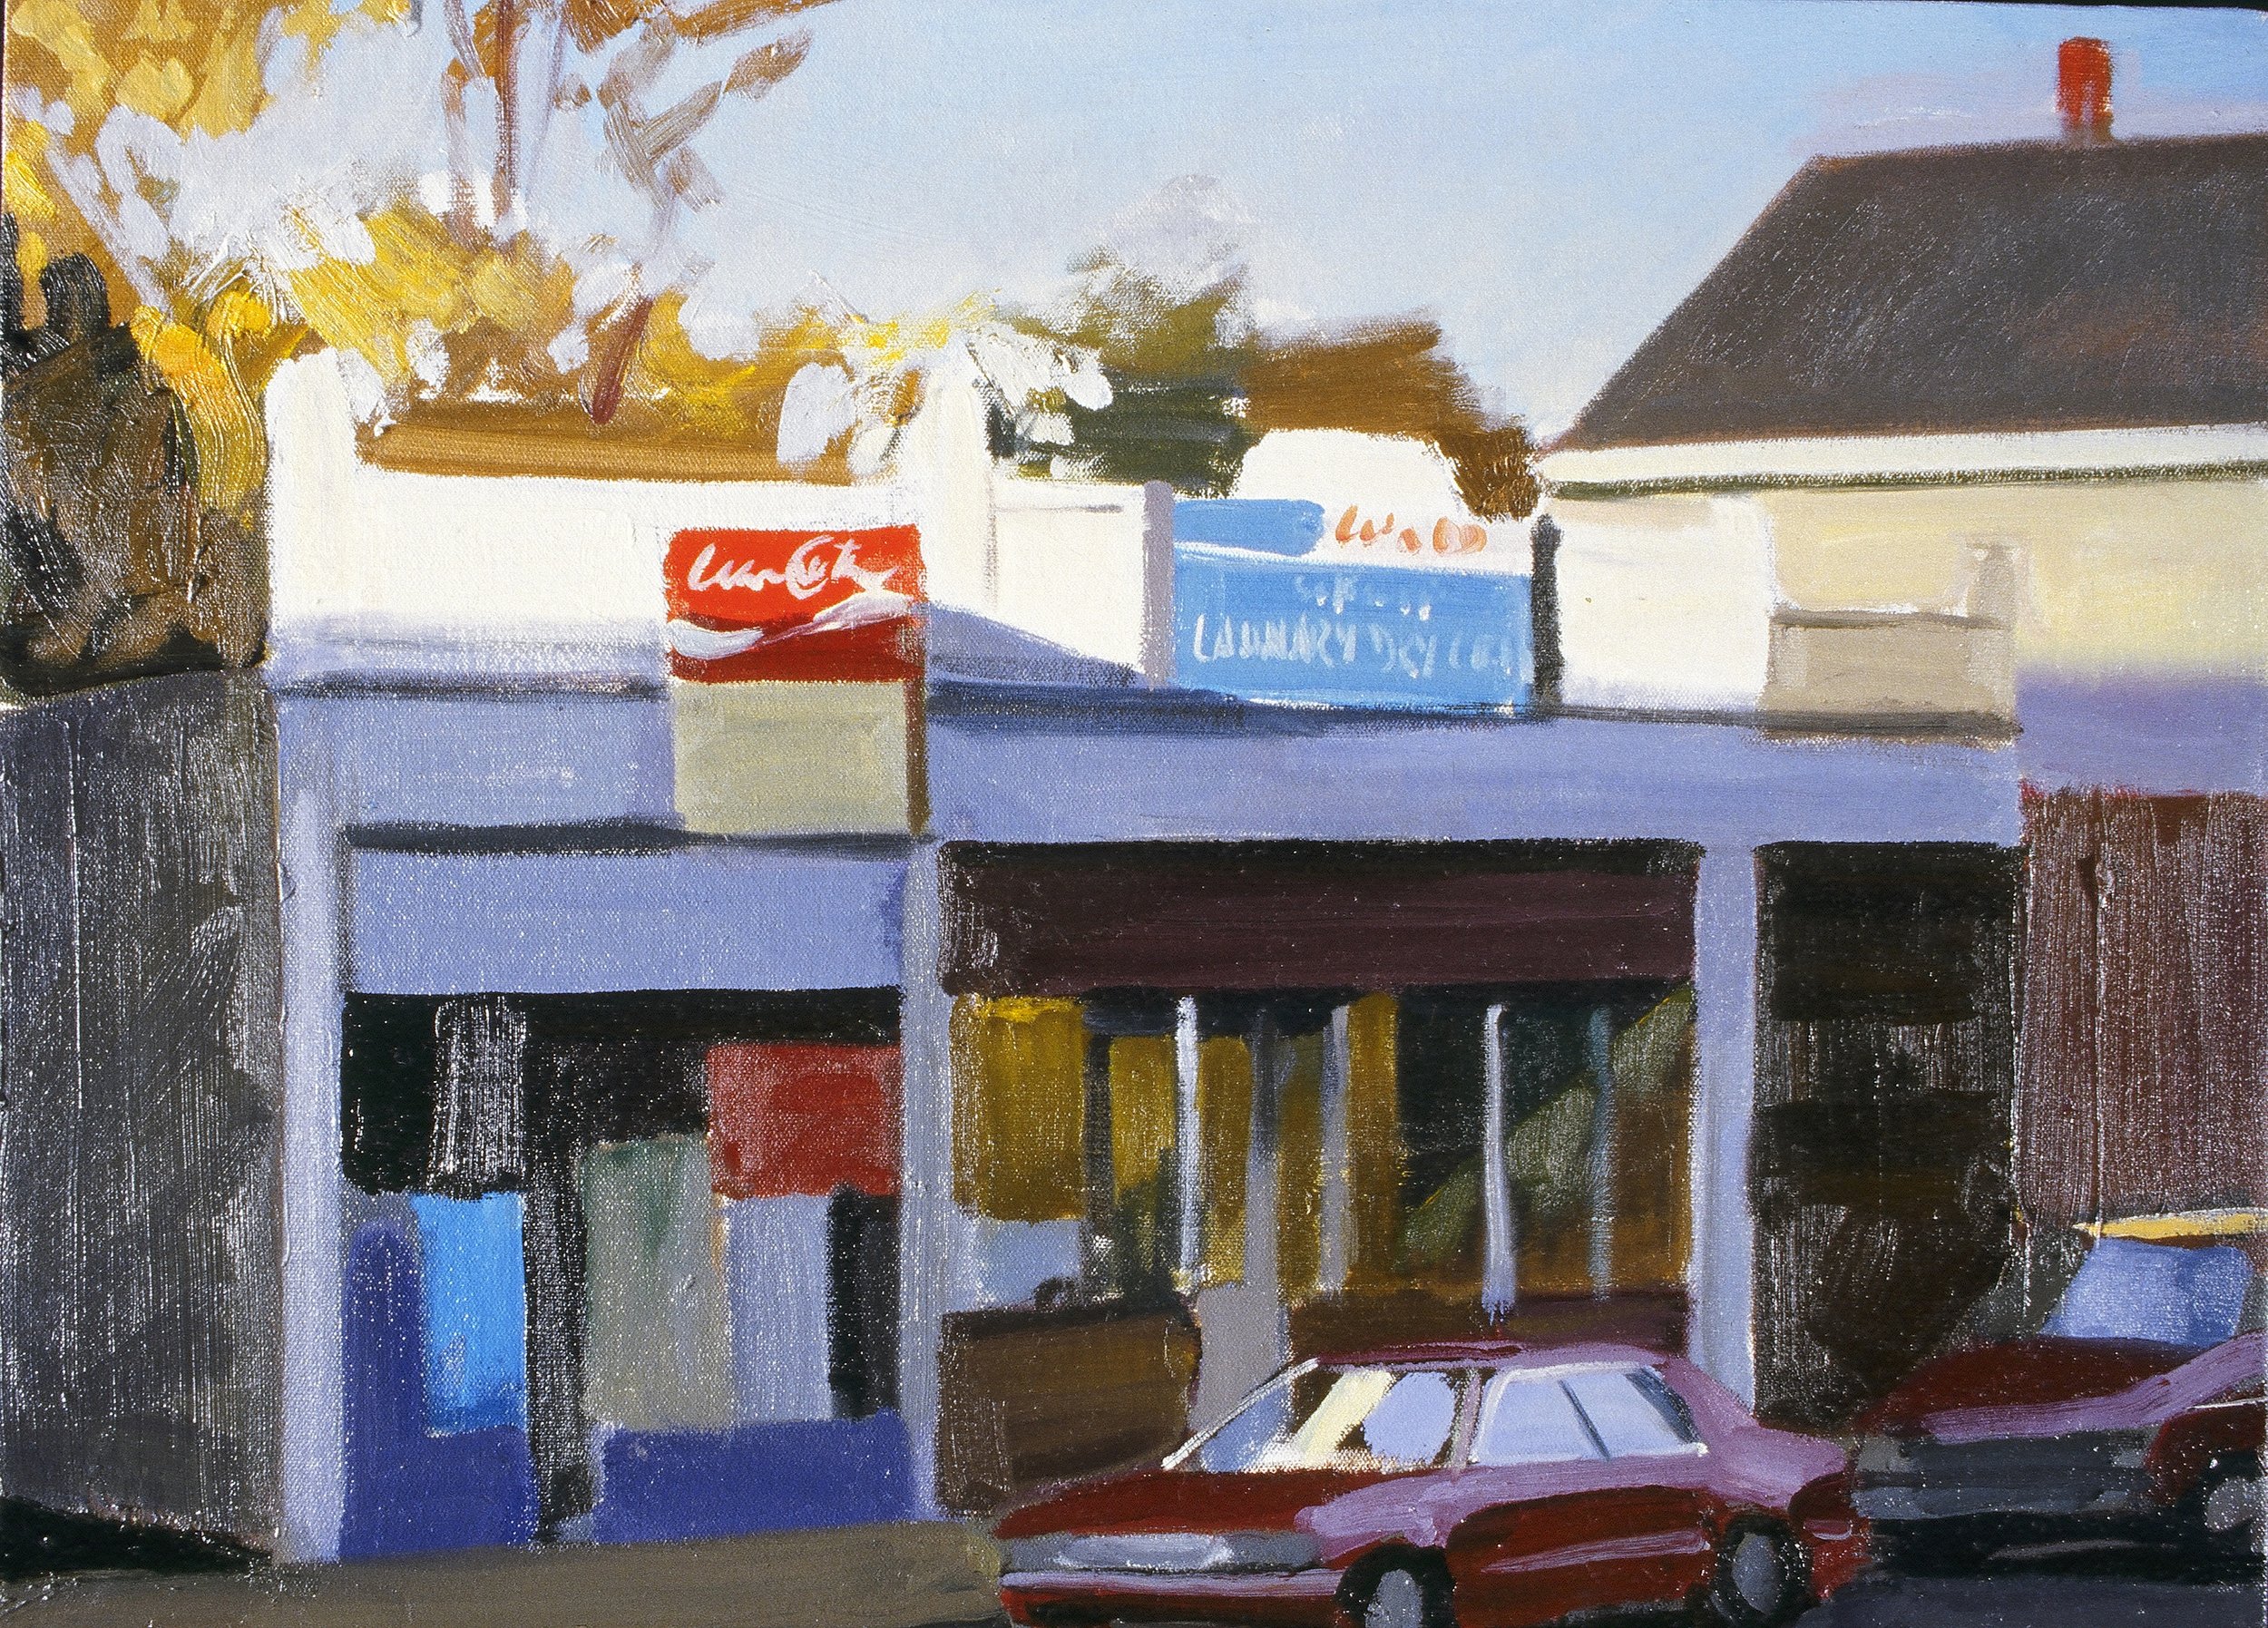  Laundromat, Sunset  18x24”, oil on canvas, 2000   